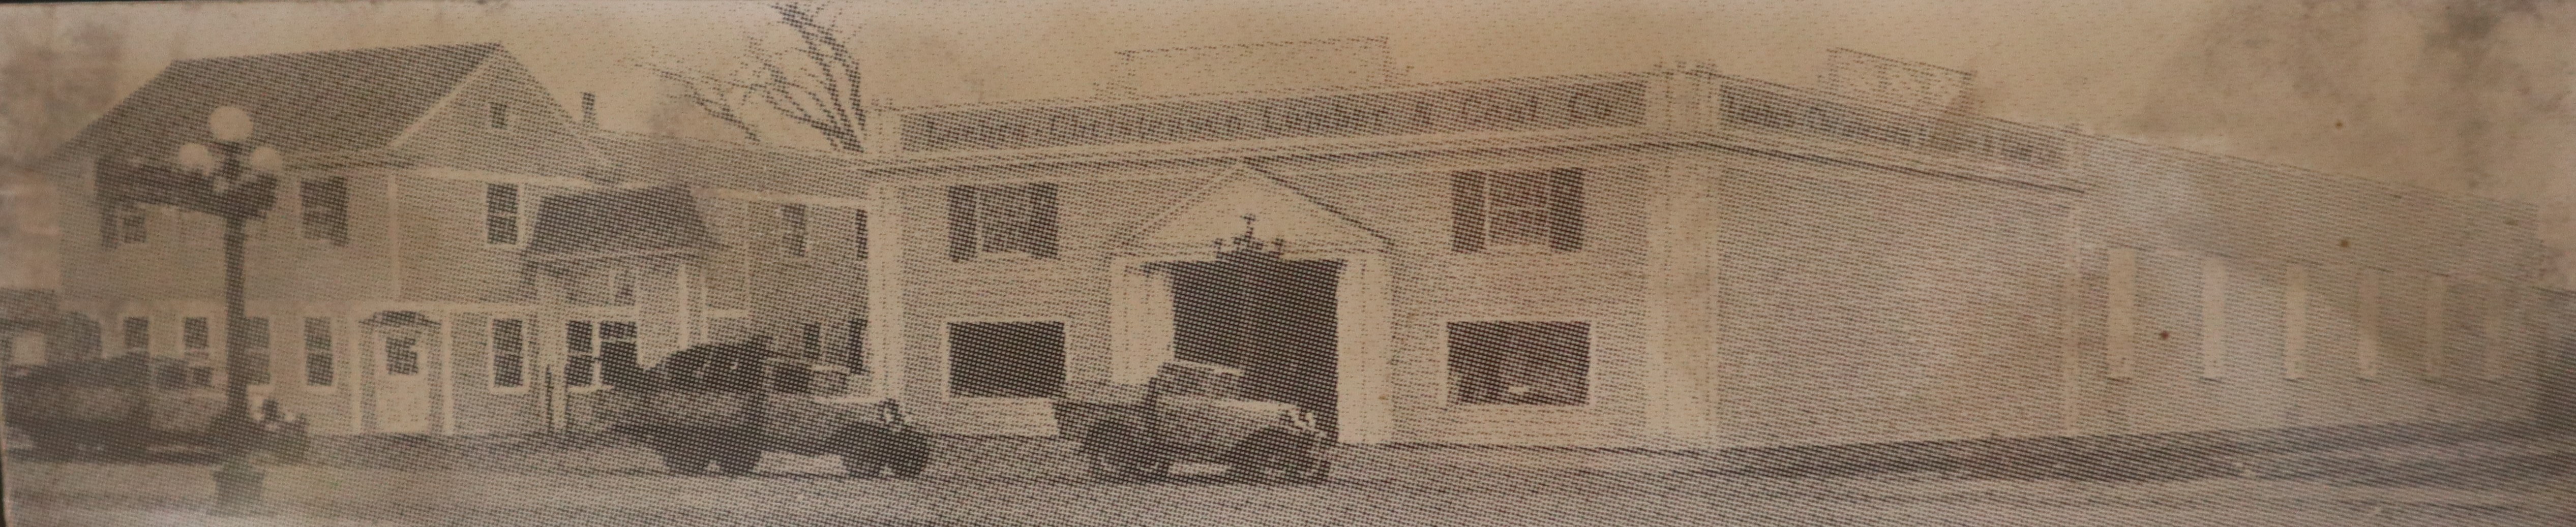 Luehrs-Christensen building, 1936